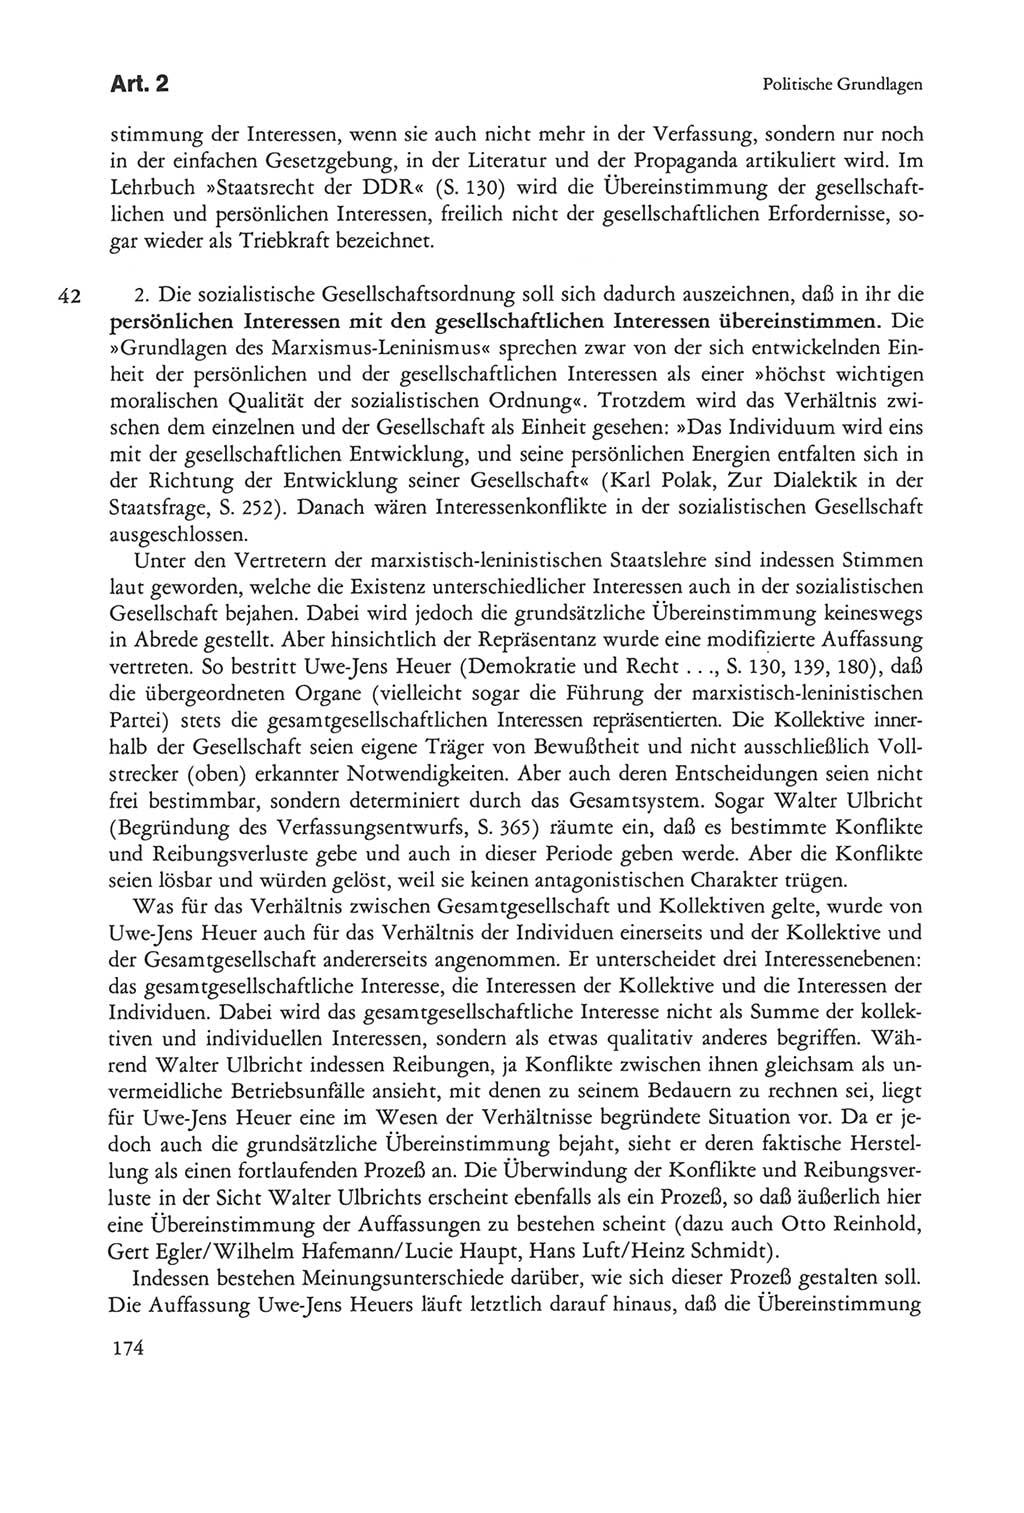 Die sozialistische Verfassung der Deutschen Demokratischen Republik (DDR), Kommentar 1982, Seite 174 (Soz. Verf. DDR Komm. 1982, S. 174)